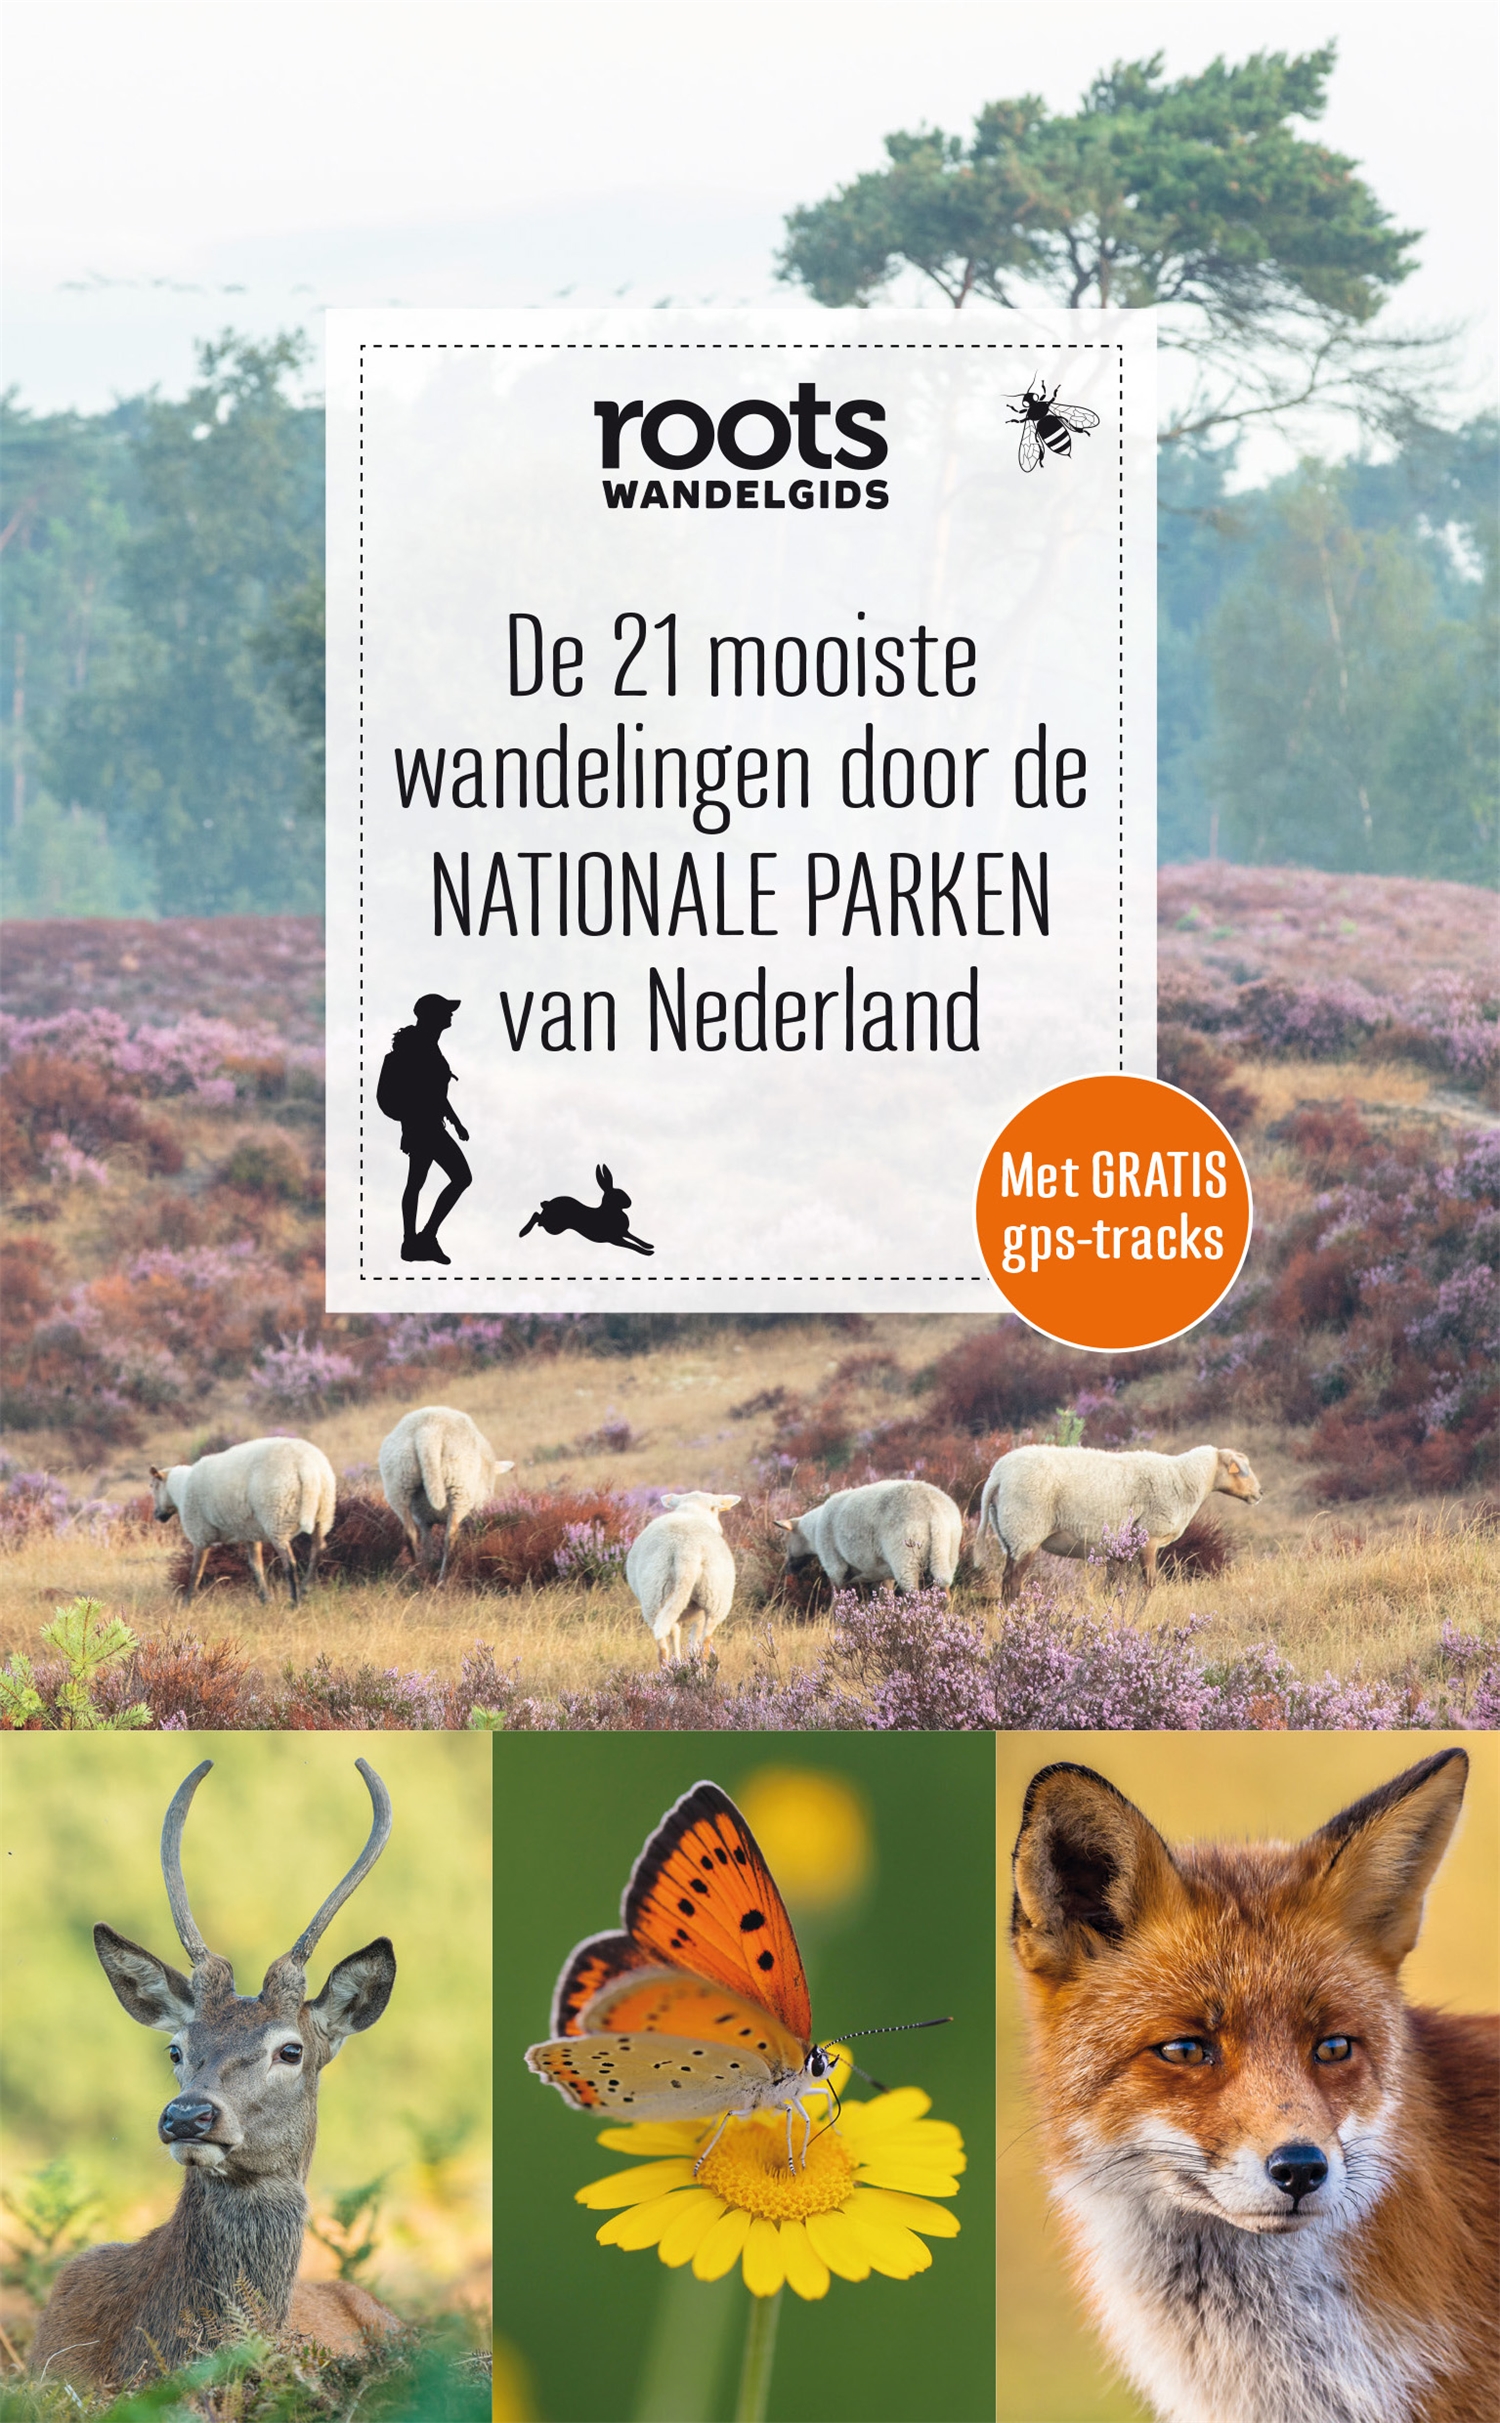 De 21 mooiste wandelingen door de NATIONALE PARKEN van Nederland (ROOTS)